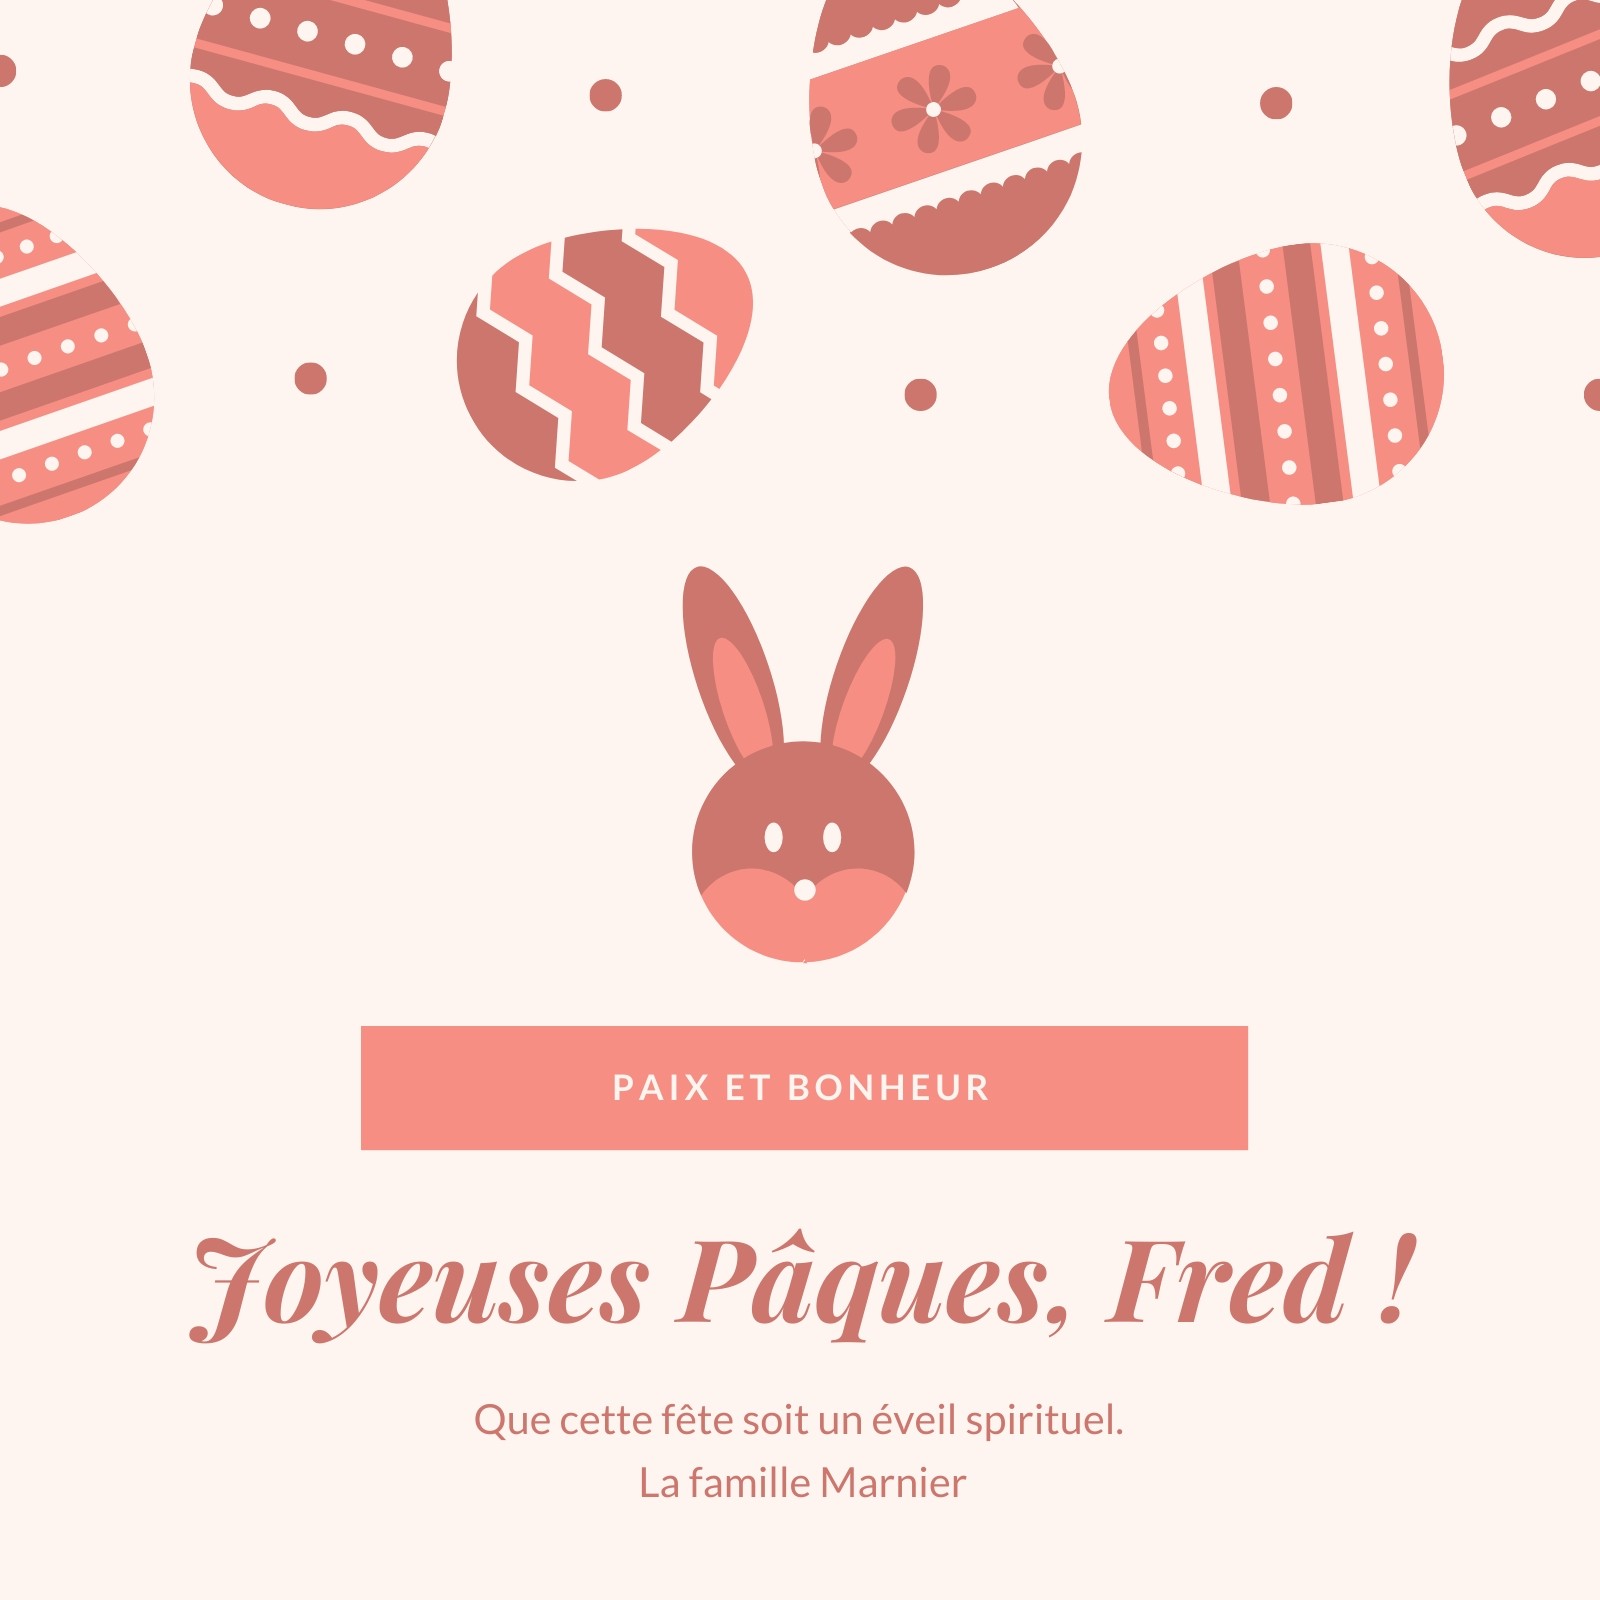 Joyeuses pâques : modèles gratuits à personnaliser - Canva